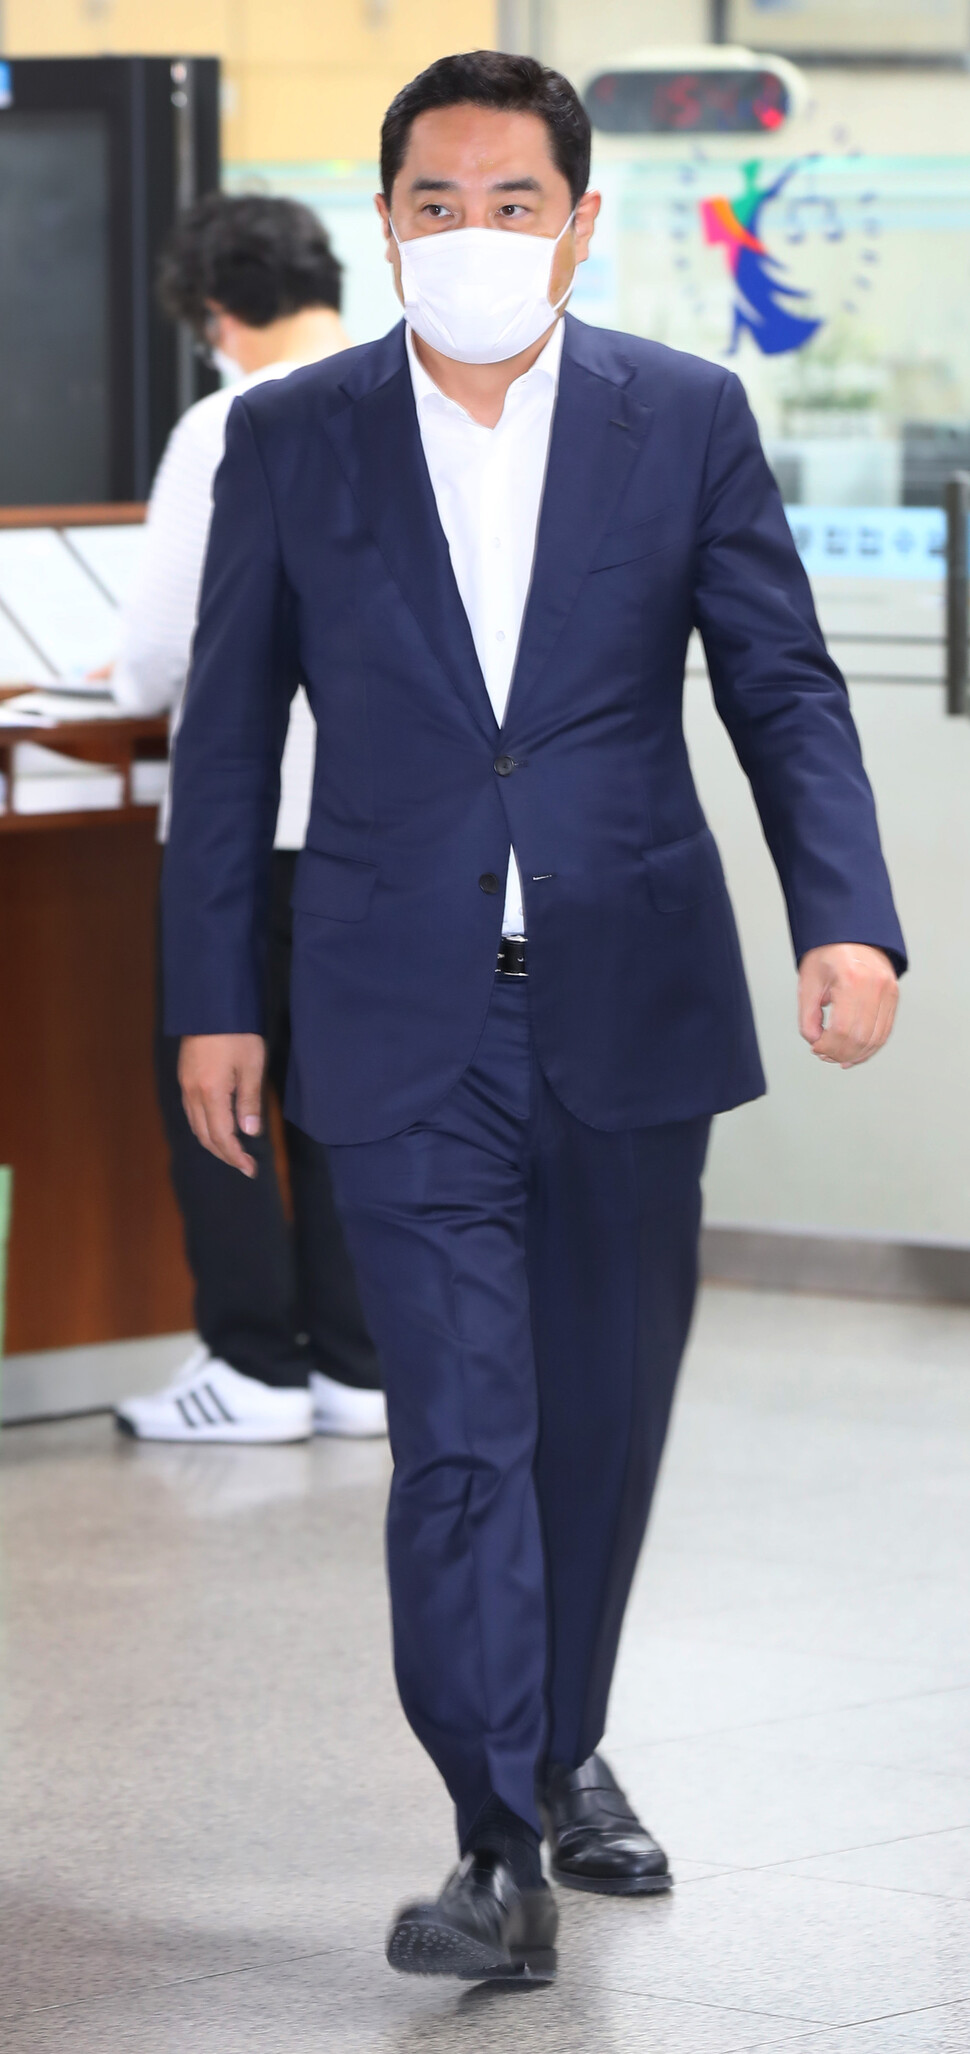 2021년 11월 명예훼손 혐의로 기소된 강용석씨가 공판에 출석하는 모습. 연합뉴스